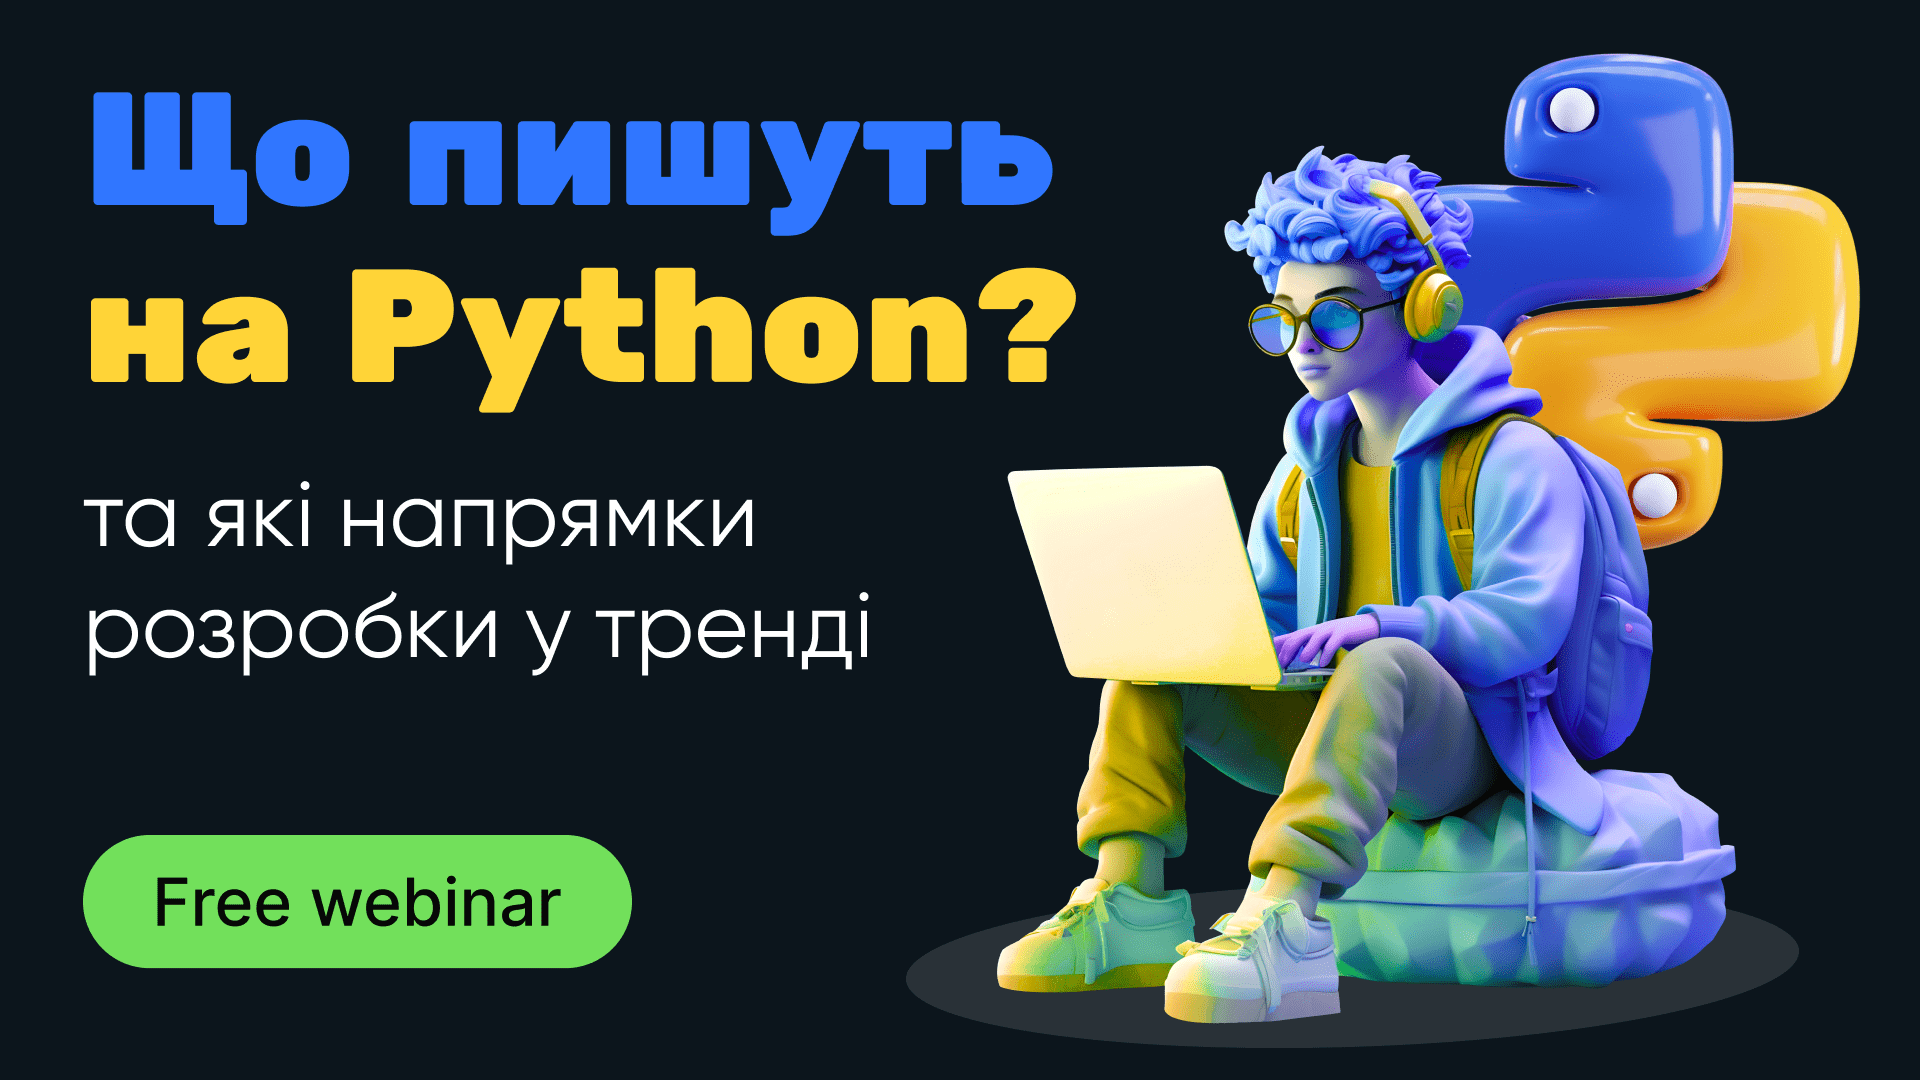 Що пишуть на Python та які напрямки розробки у тренді